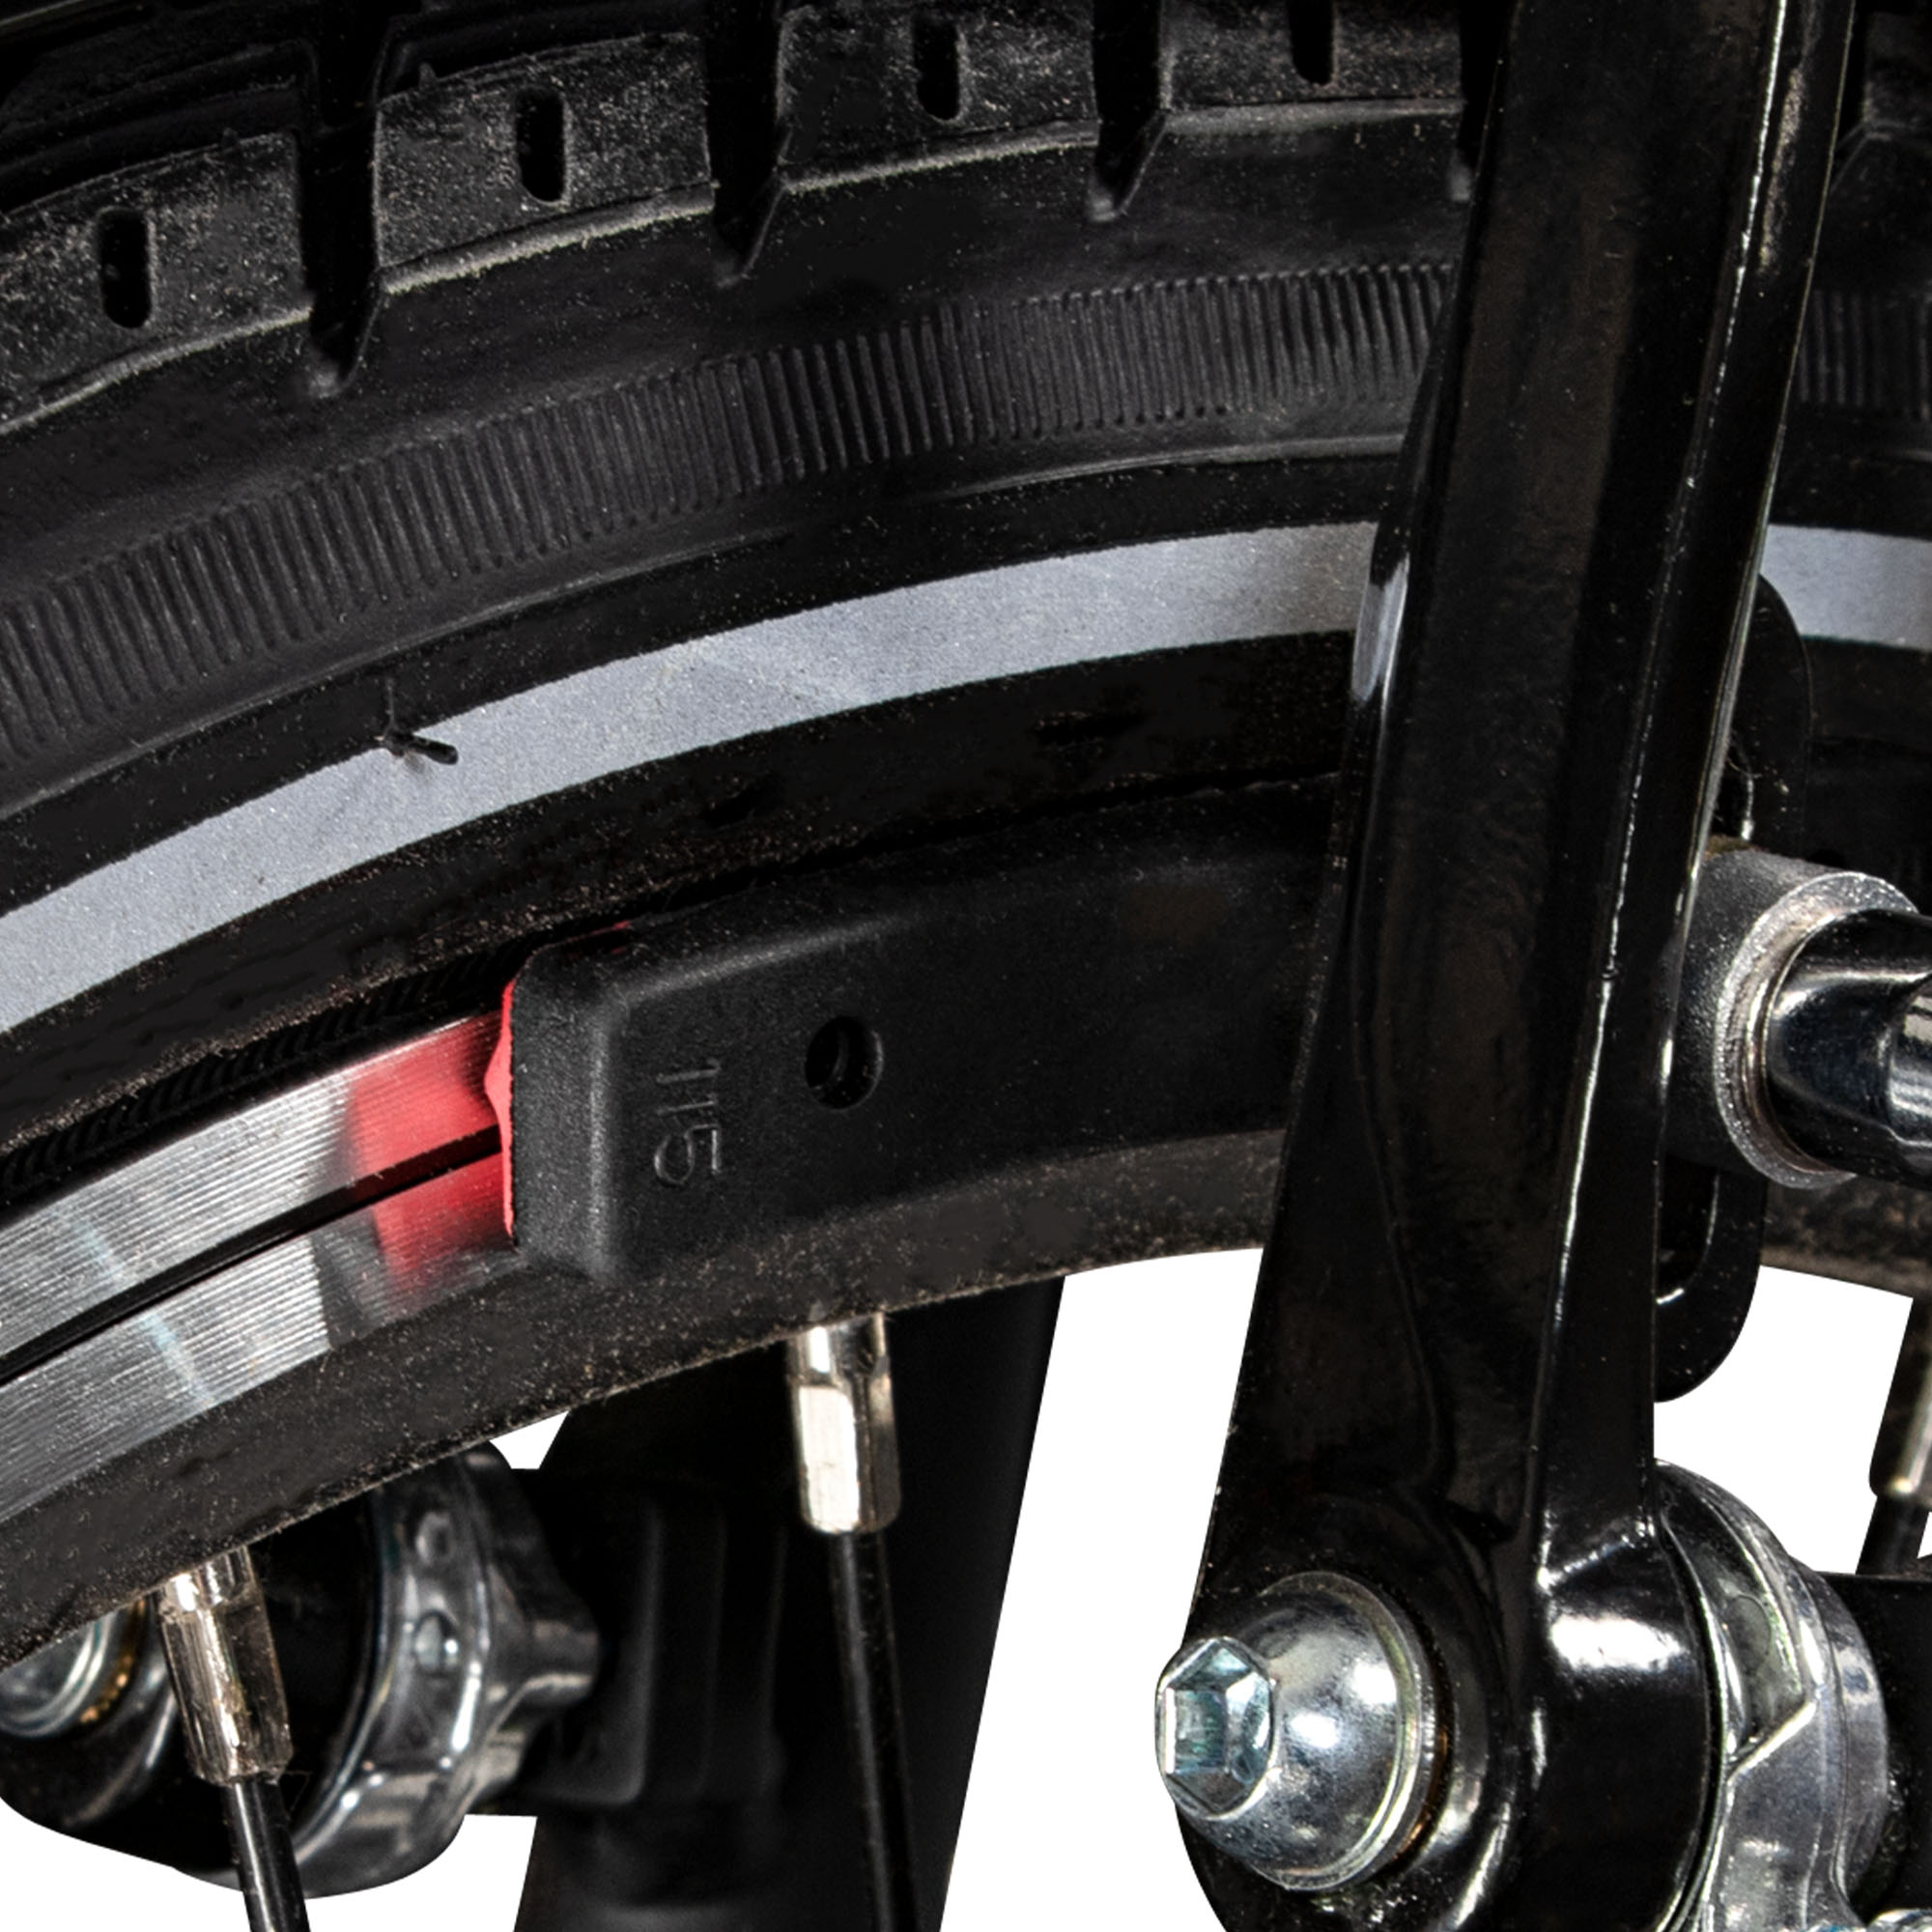 2x Bremsschuhe Bremsbeläge Fahrrad Bremsklötze V-Brake 55mm Bremsback